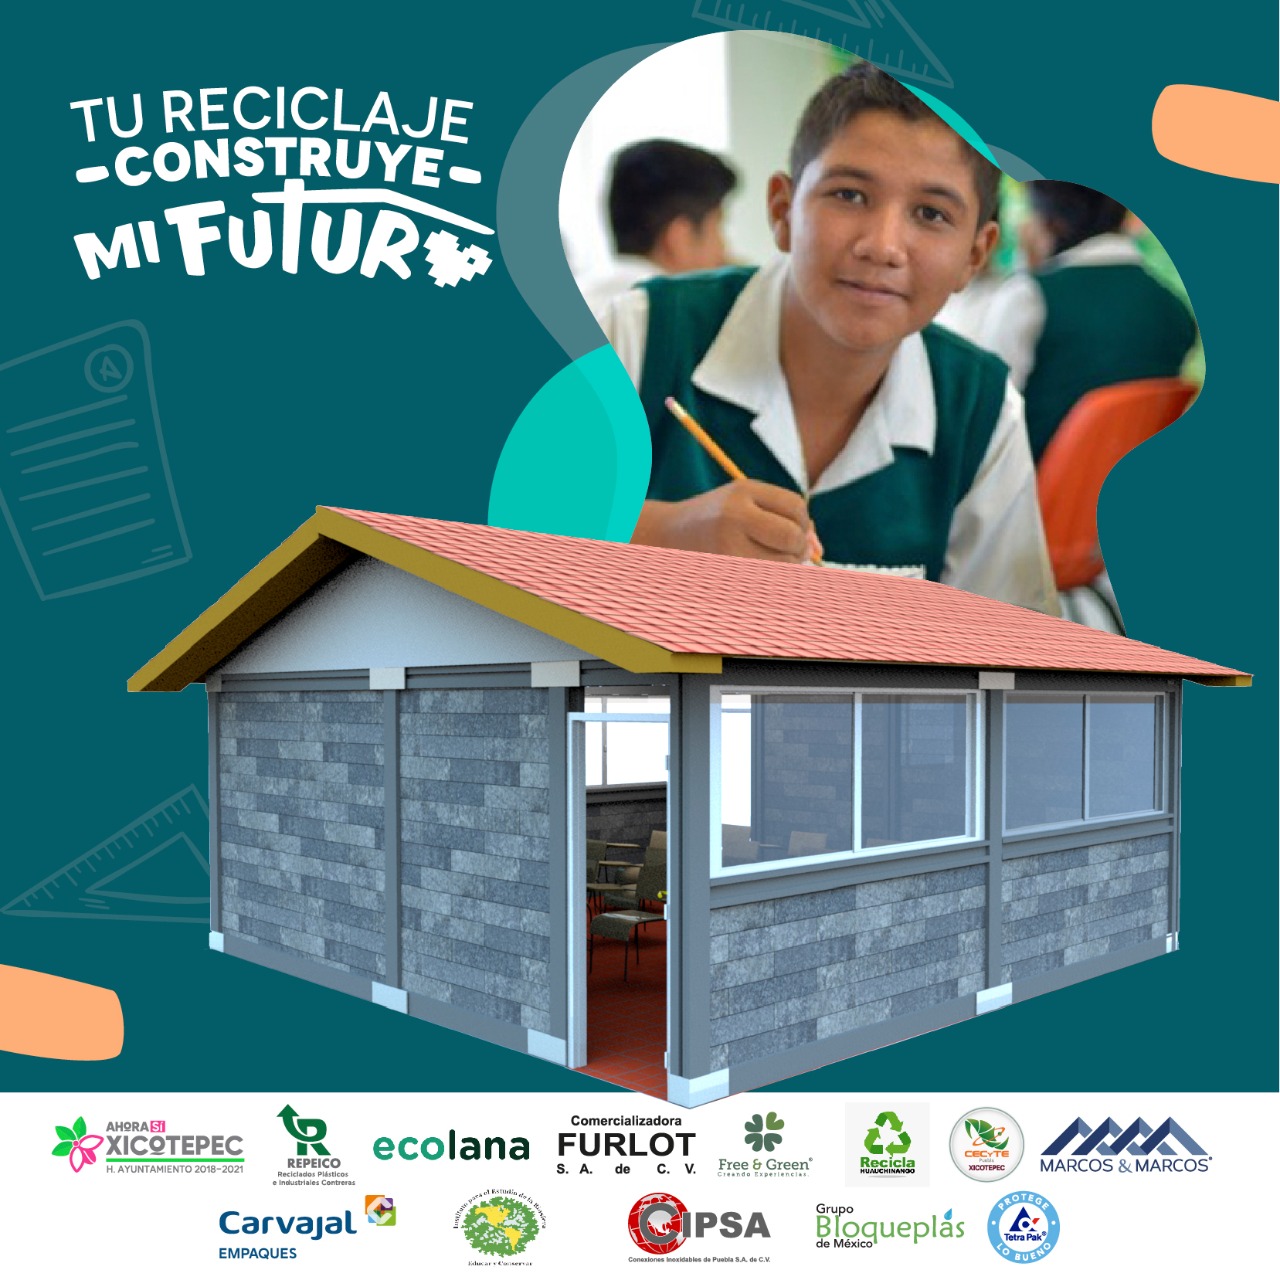 1ra Aula Sustentable en México con envases reciclados de Tetra Pak